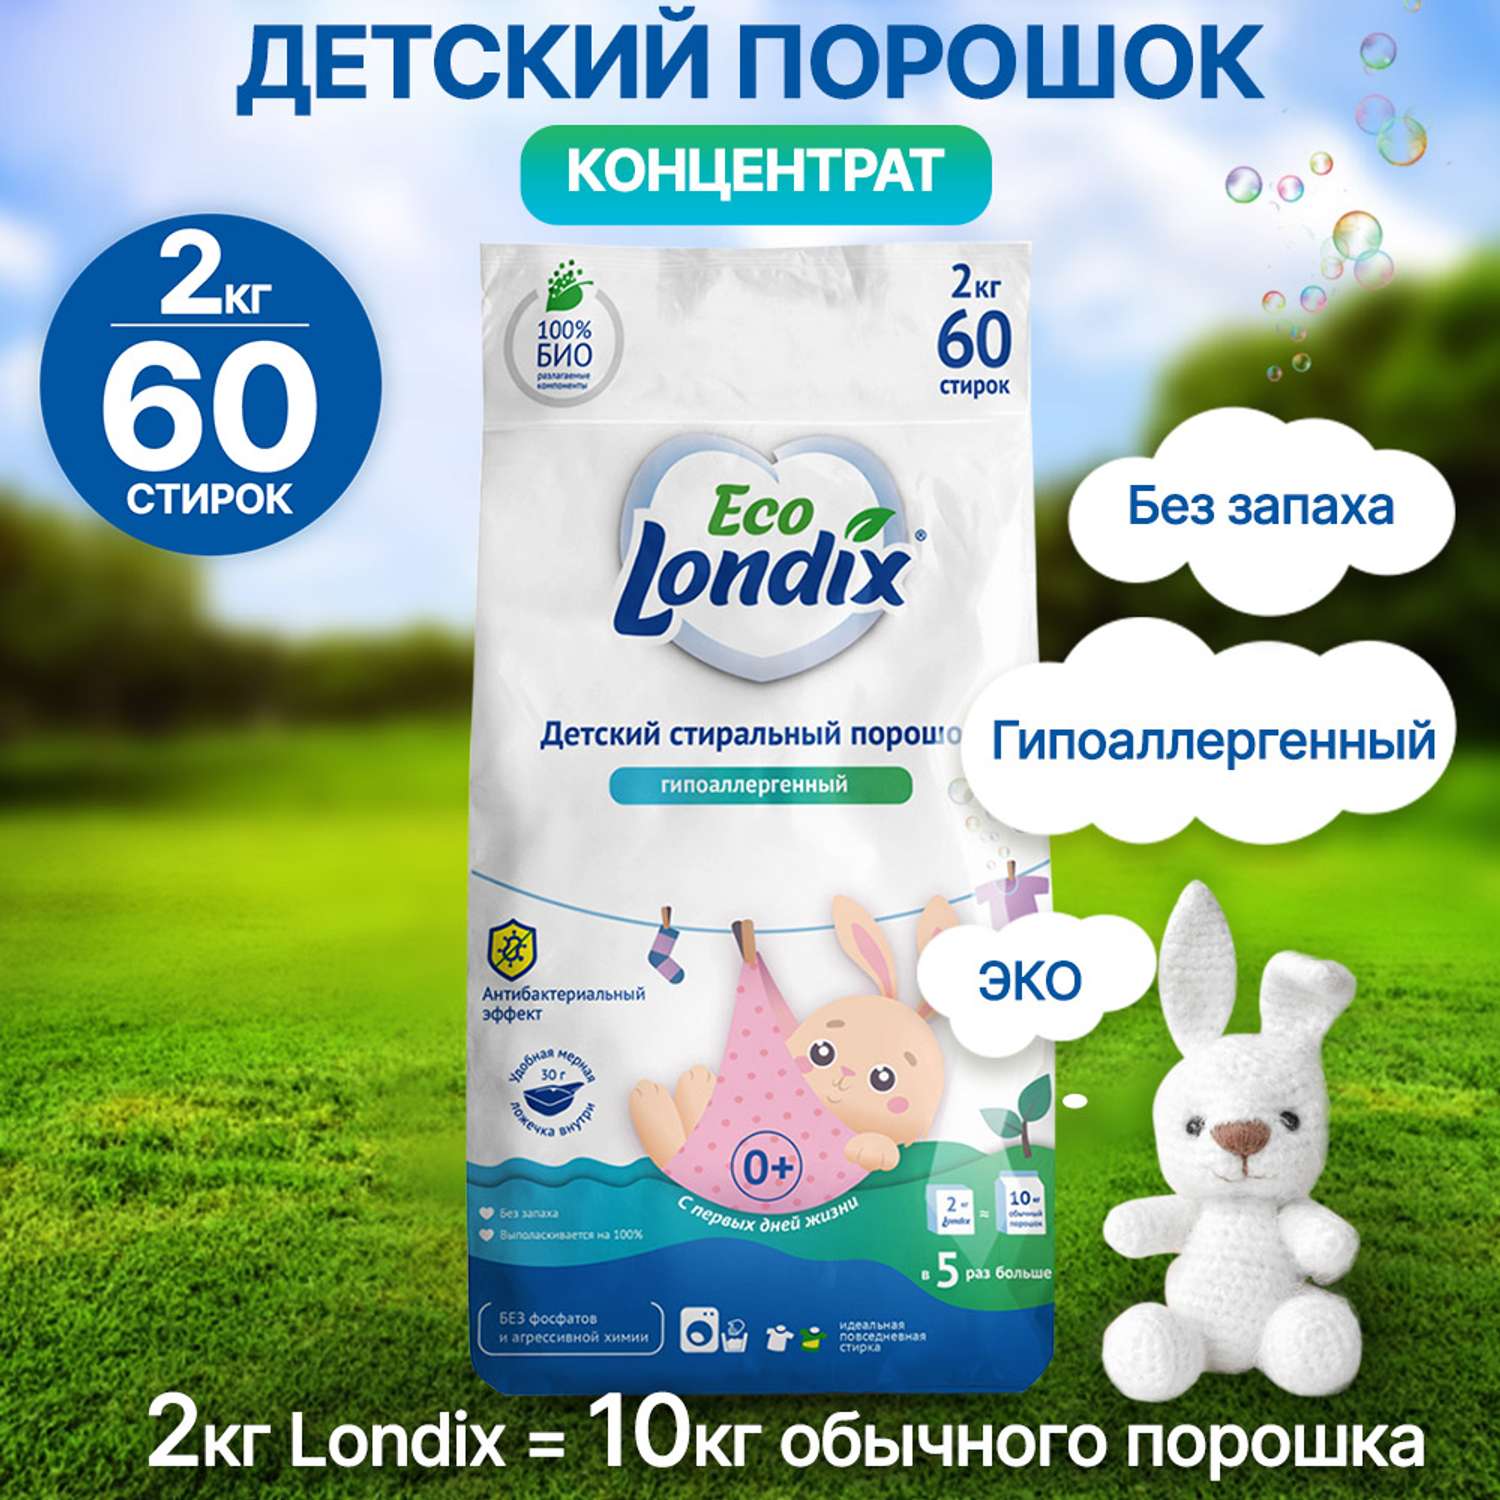 Детский стиральный порошок Londix гипоаллергенный без запаха концентрат 60 стирок 2 кг - фото 1